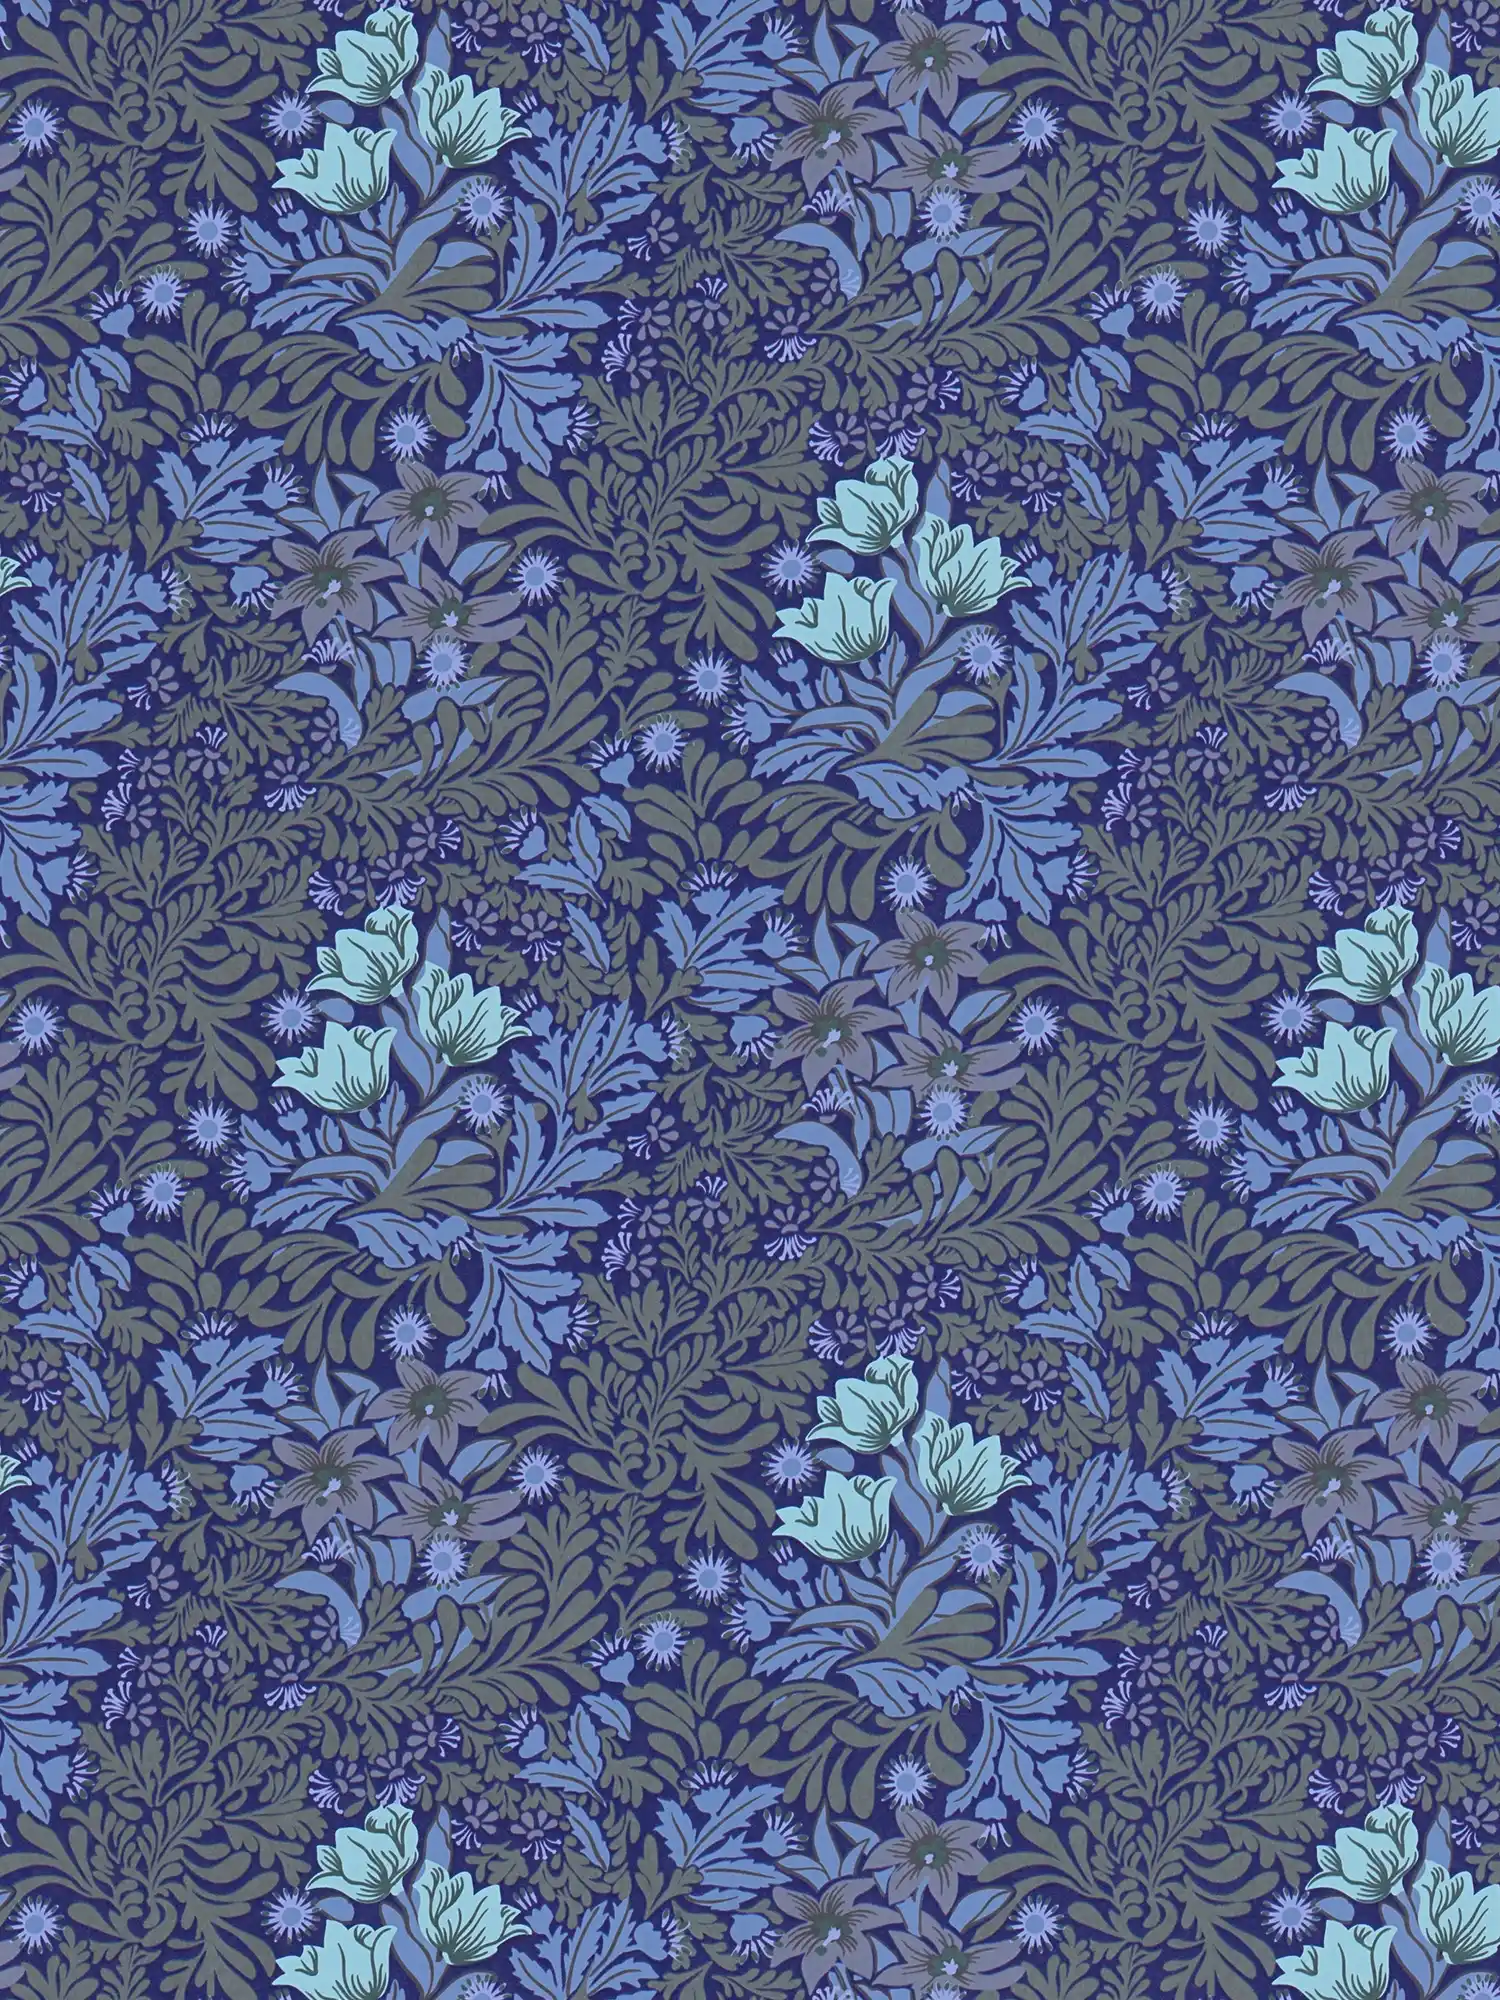 Bloemrijkvliesbehang met bladranken en bloemen - blauw, grijs, groen
